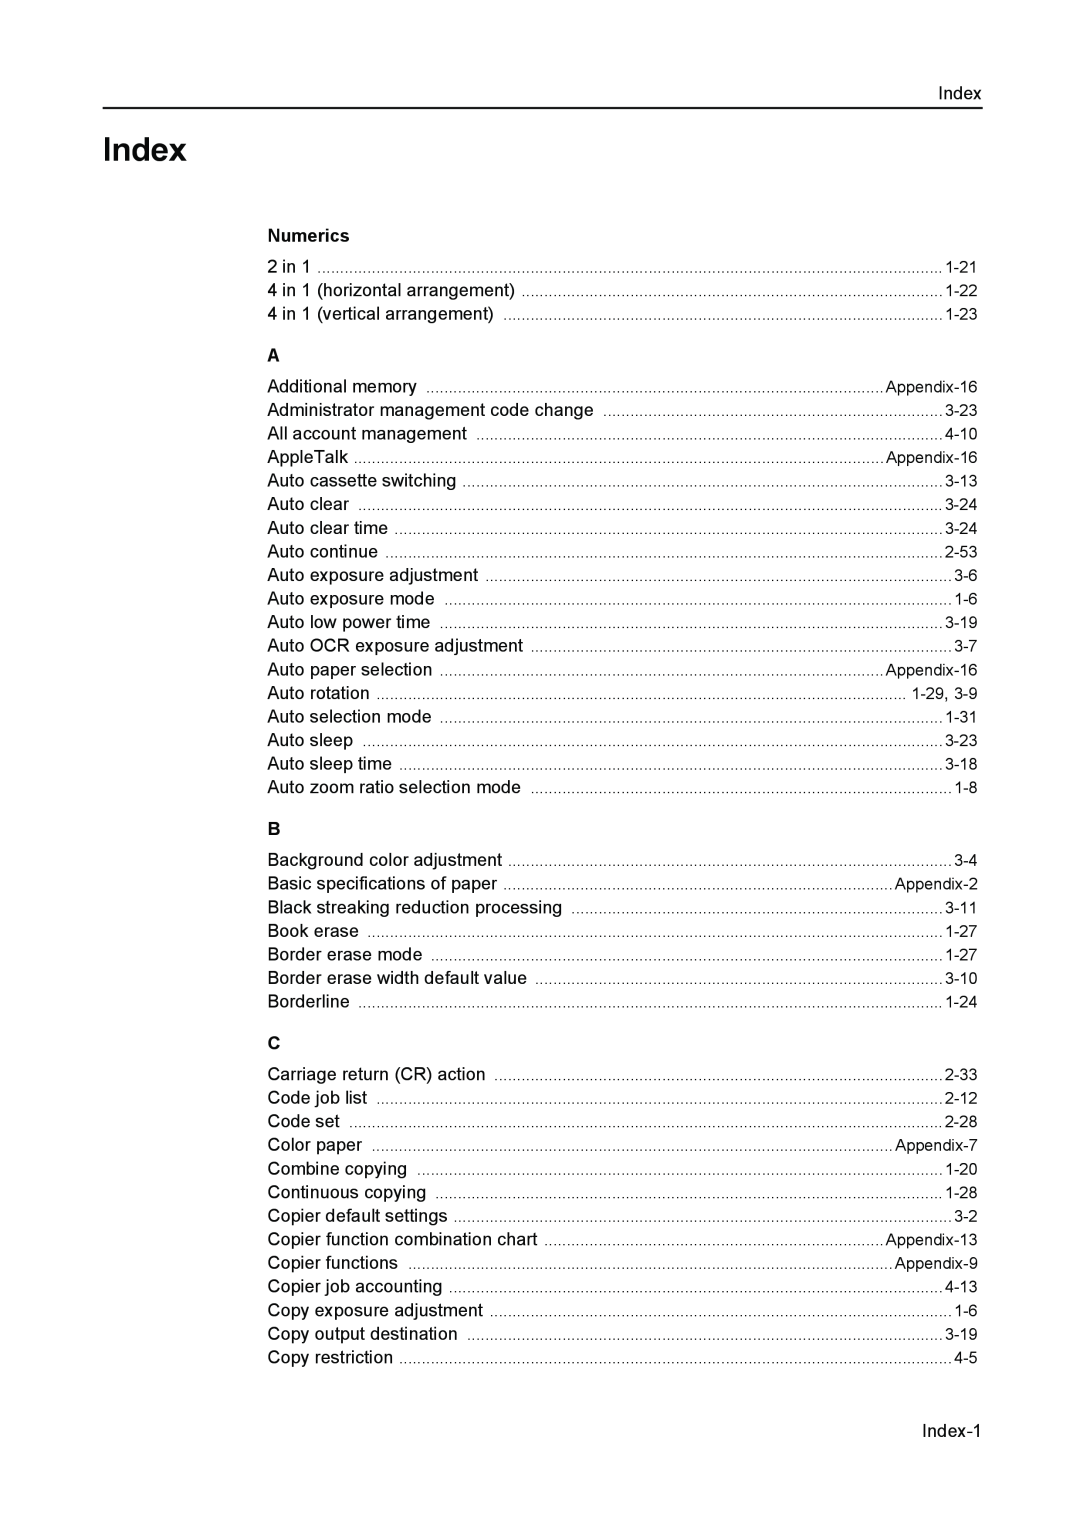 Kyocera 2550, 2050, 1650 manual Numerics, Index-1 